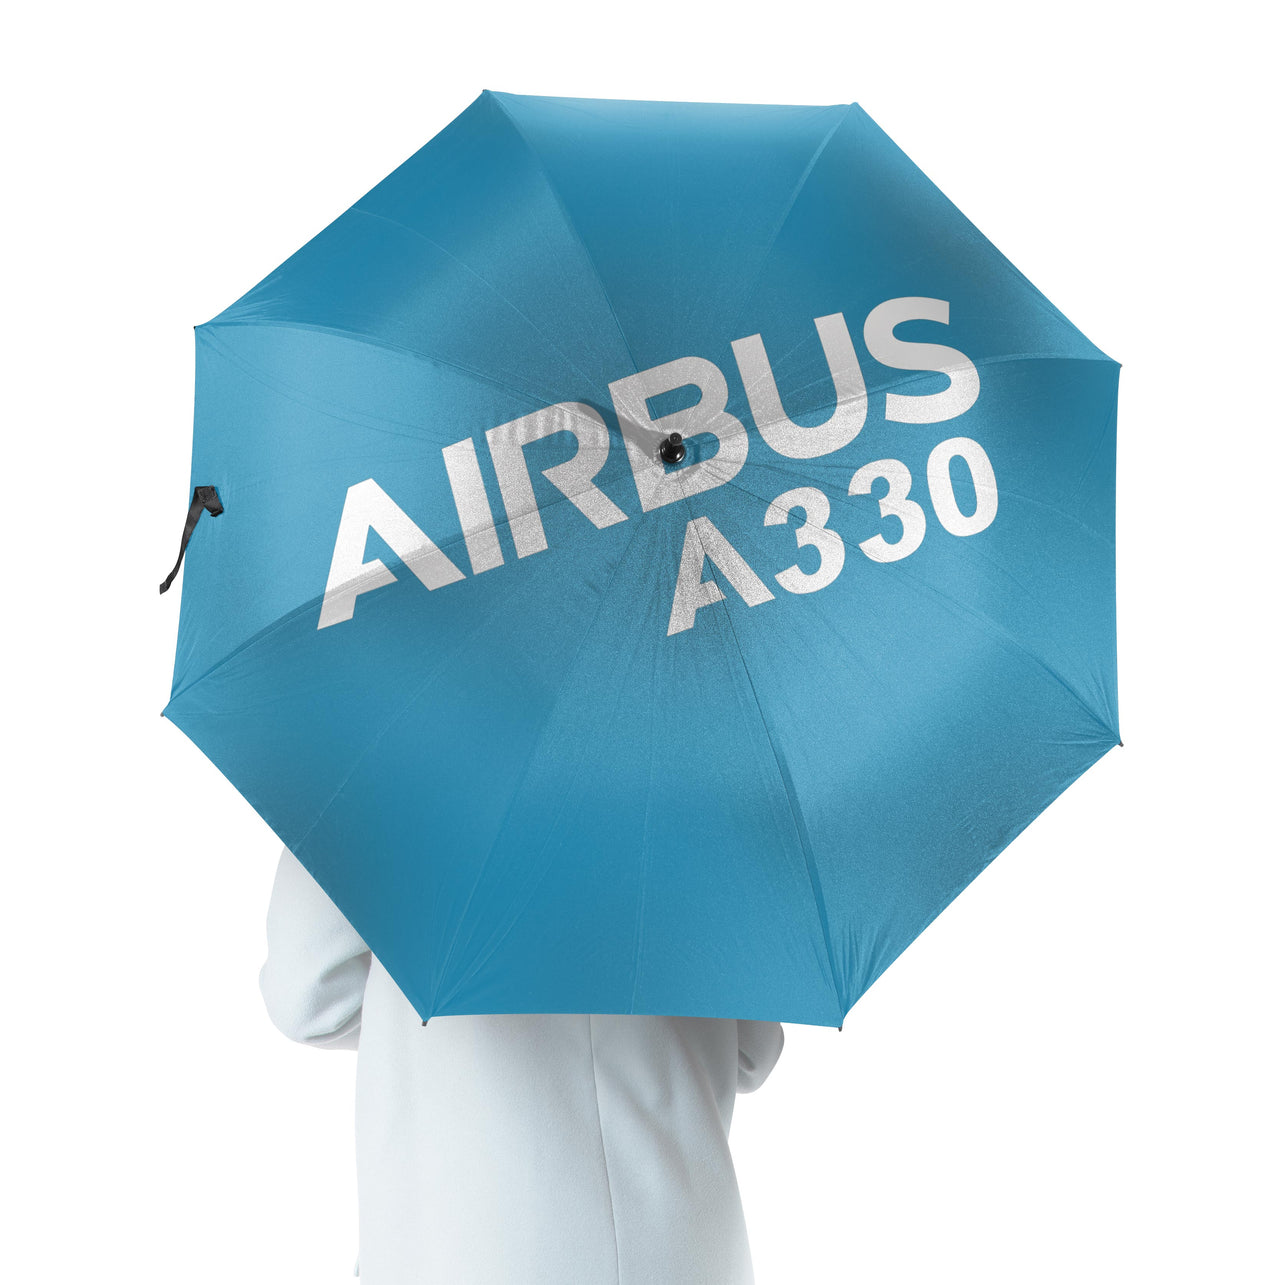 Airbus A330 & Text Designed Umbrella